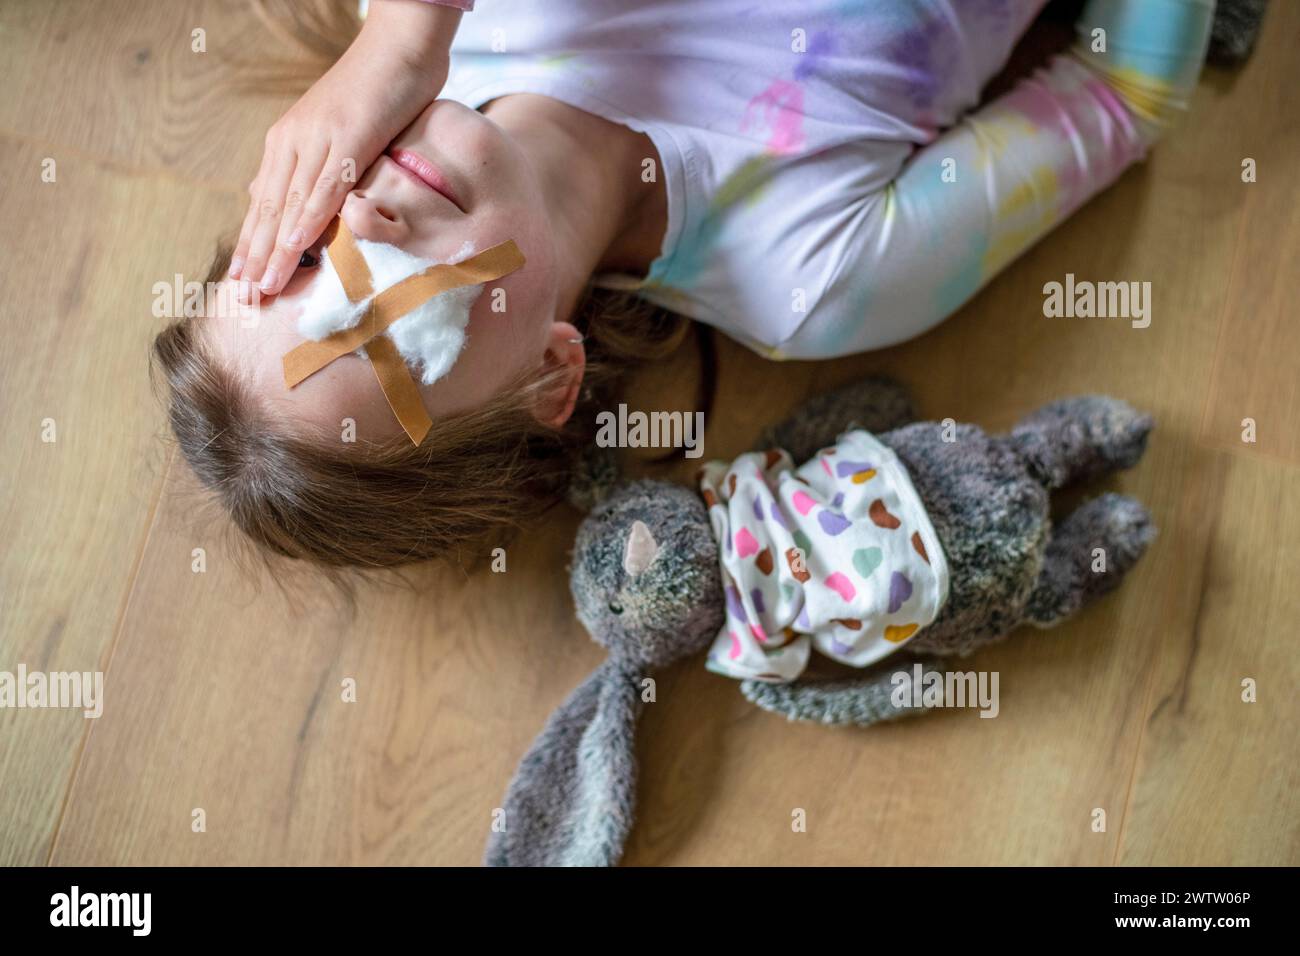 Ein junges Mädchen, das auf dem Boden liegt und mit ihrem Plüschhasen an ihrer Seite steht. Beide sehen so aus, als bräuchten sie ein paar Kleinigkeiten. Stockfoto